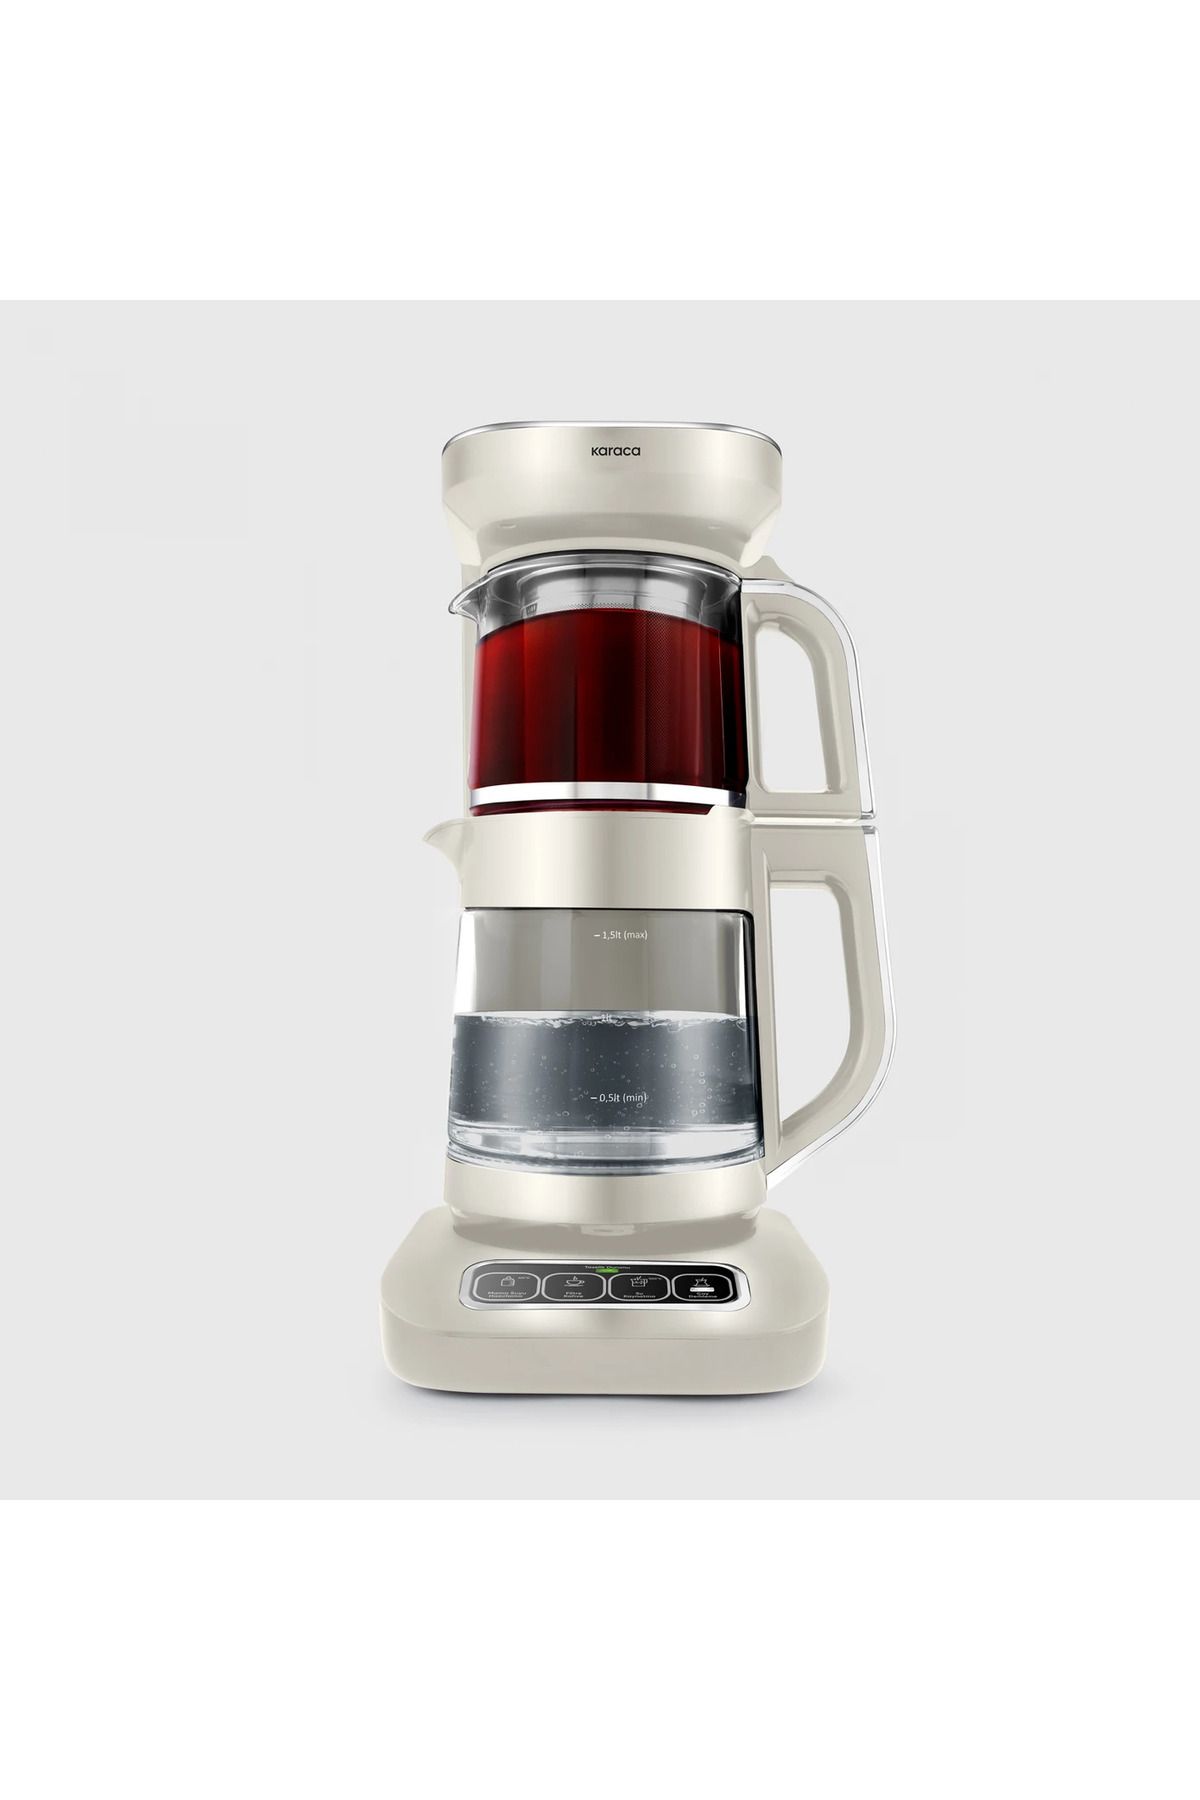 Karaca Yeni Seri Pro 4 in 1 Konuşan Cam Çay Makinesi, Filtre Kahve, Mama Suyu Hazırlama - Şık Tasarım